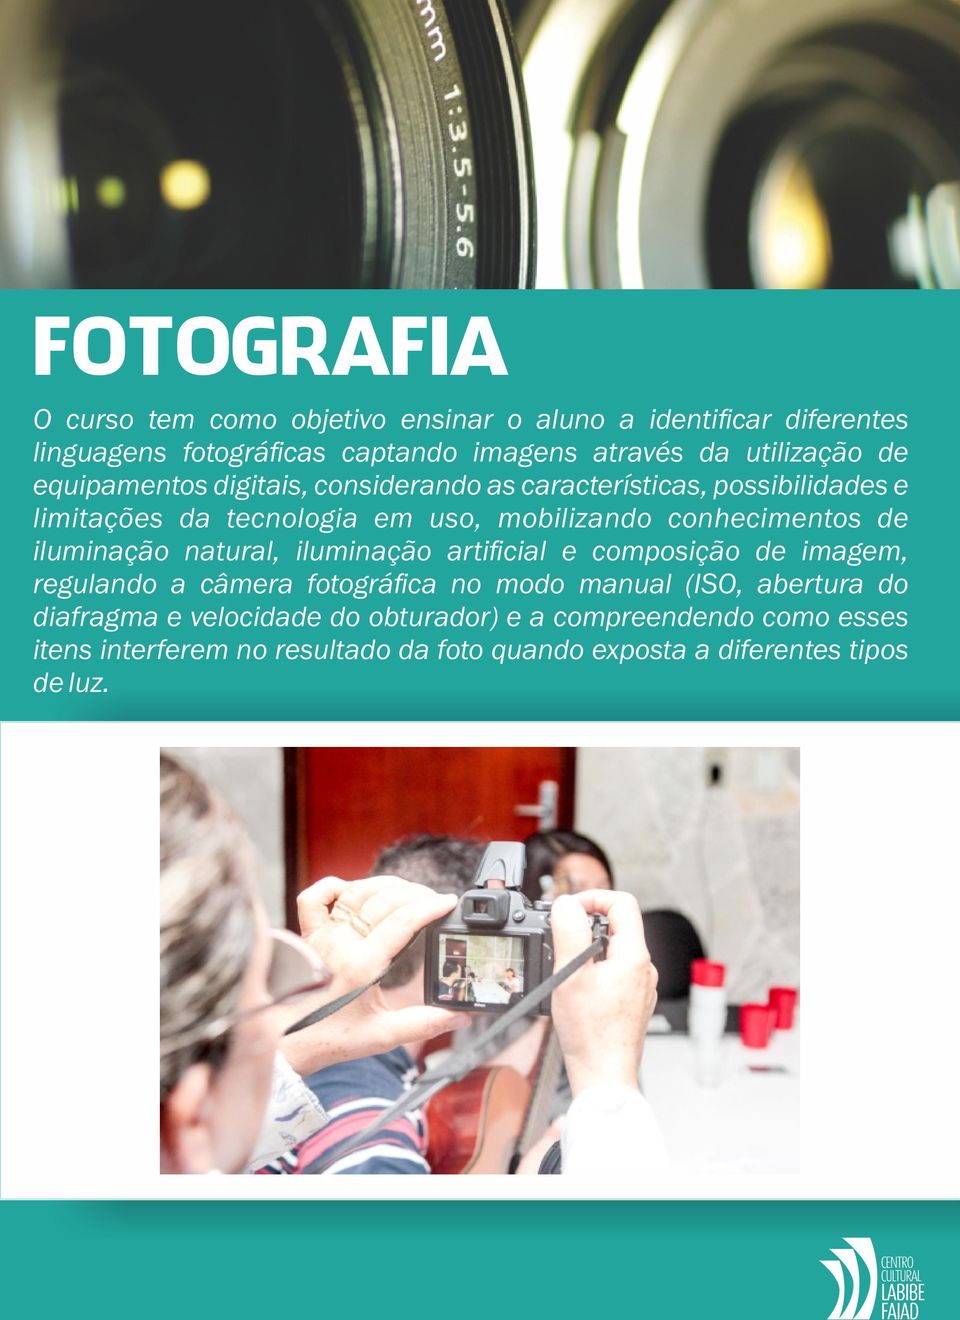 conhecimentos de iluminação natural, iluminação artificial e composição de imagem, regulando a câmera fotográfica no modo manual (ISO,